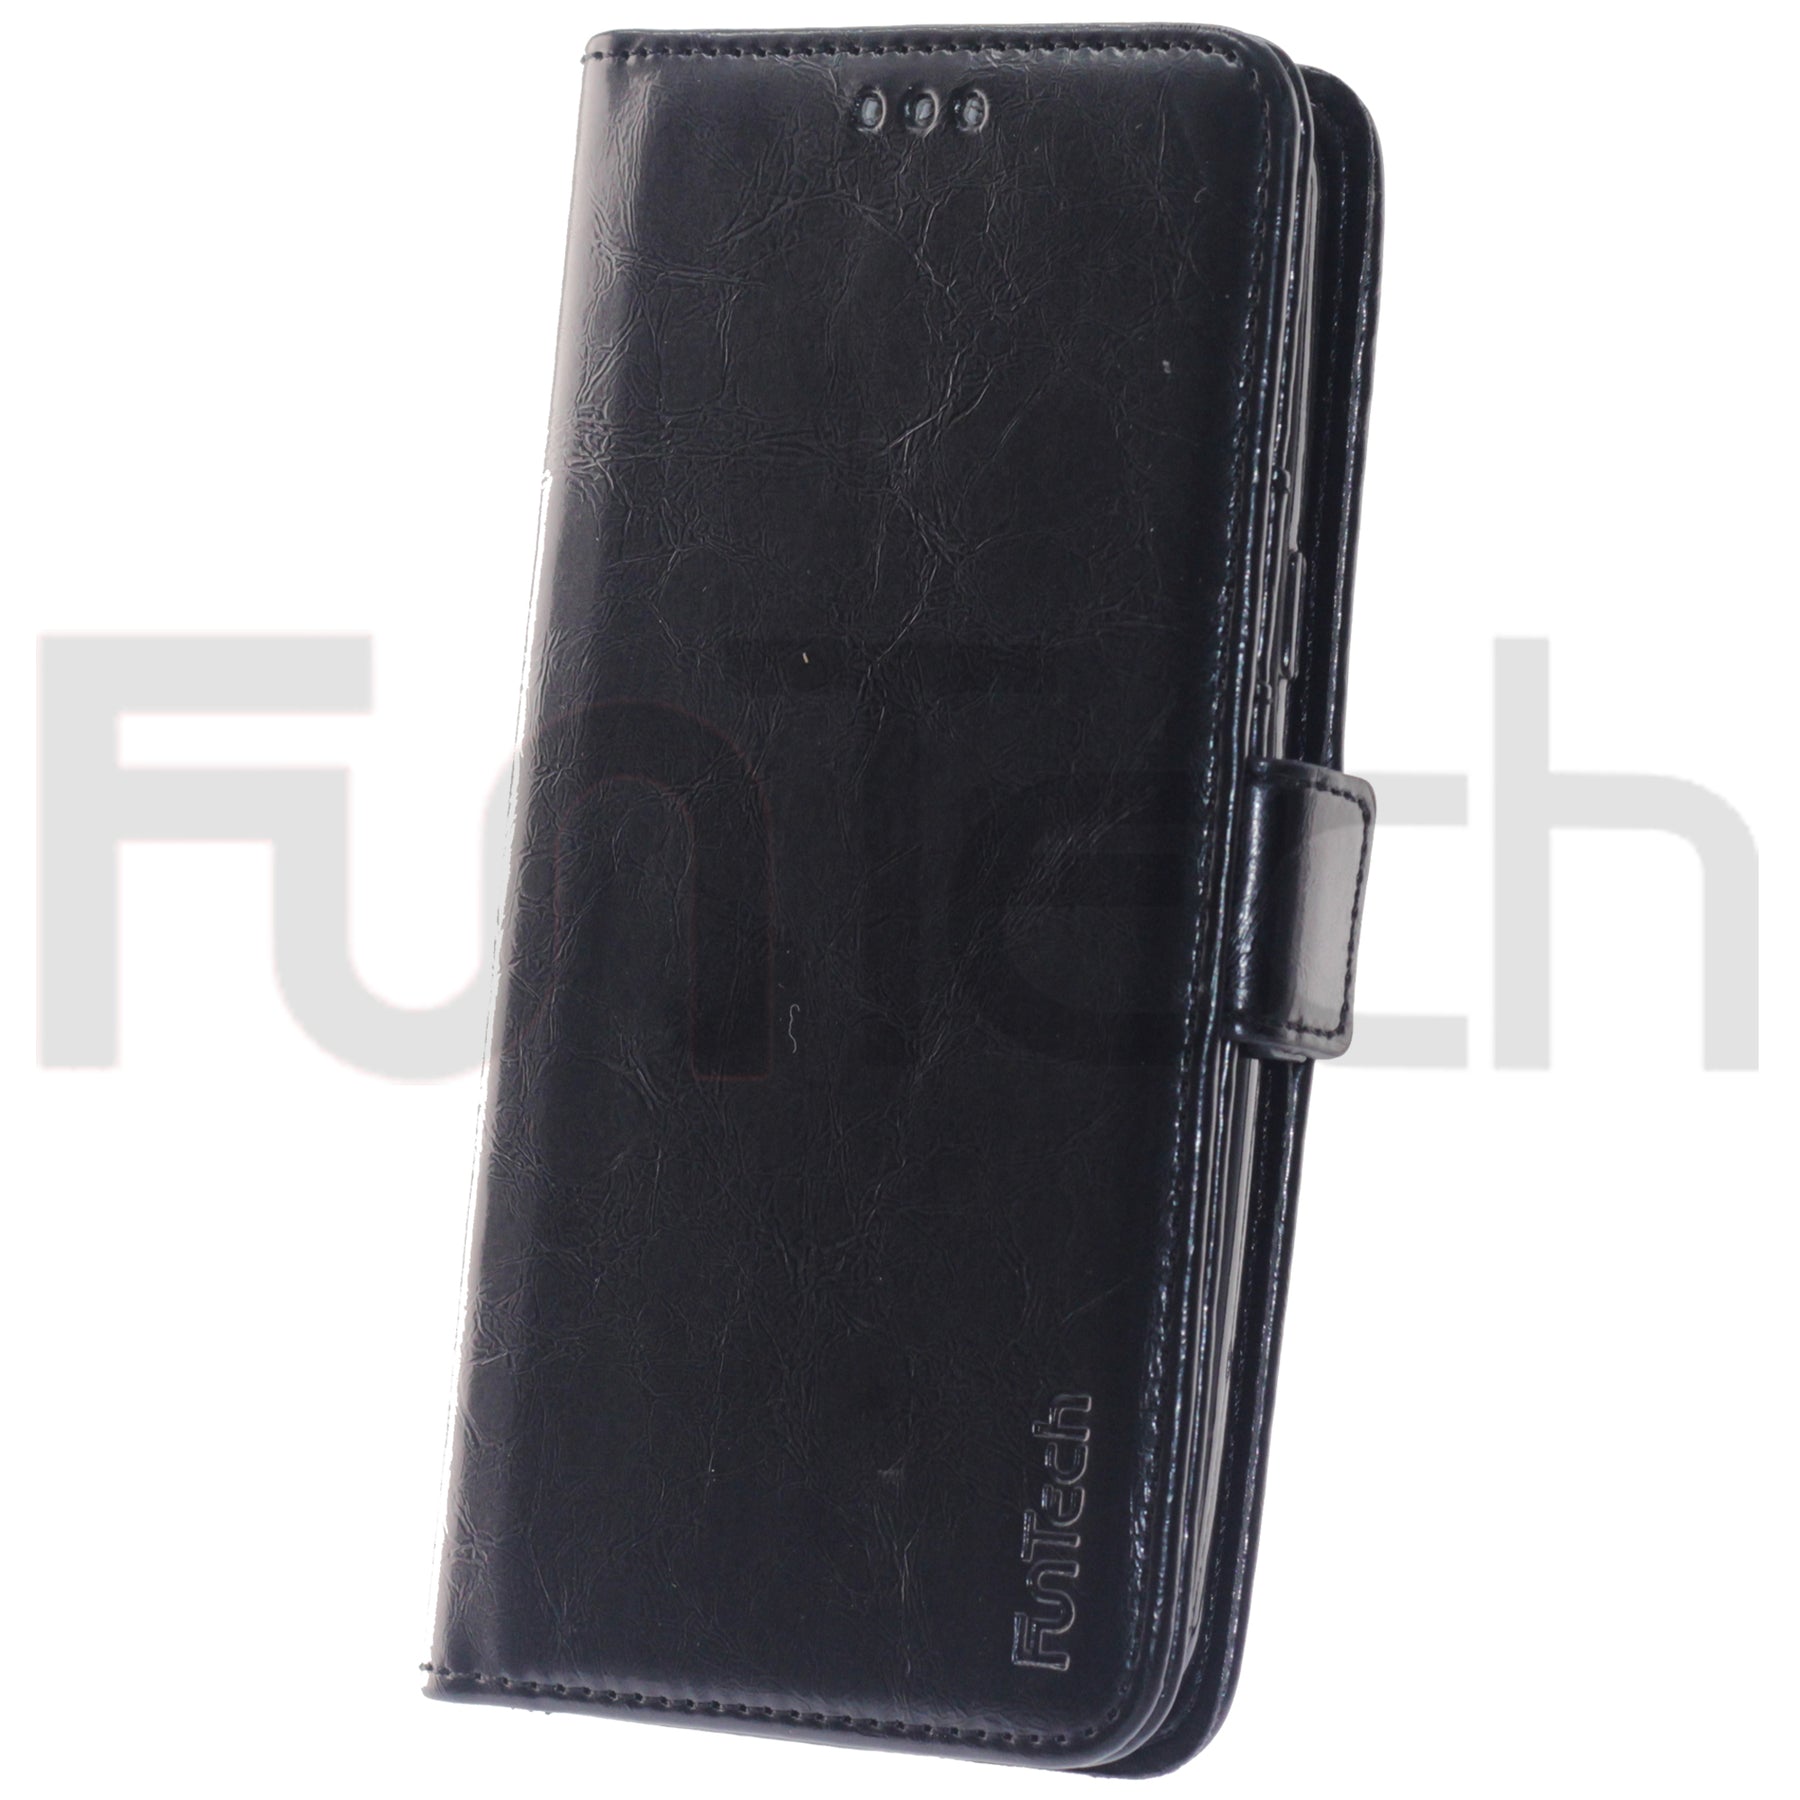 Samsung J3 2016, Leather Wallet Case, Color Black.